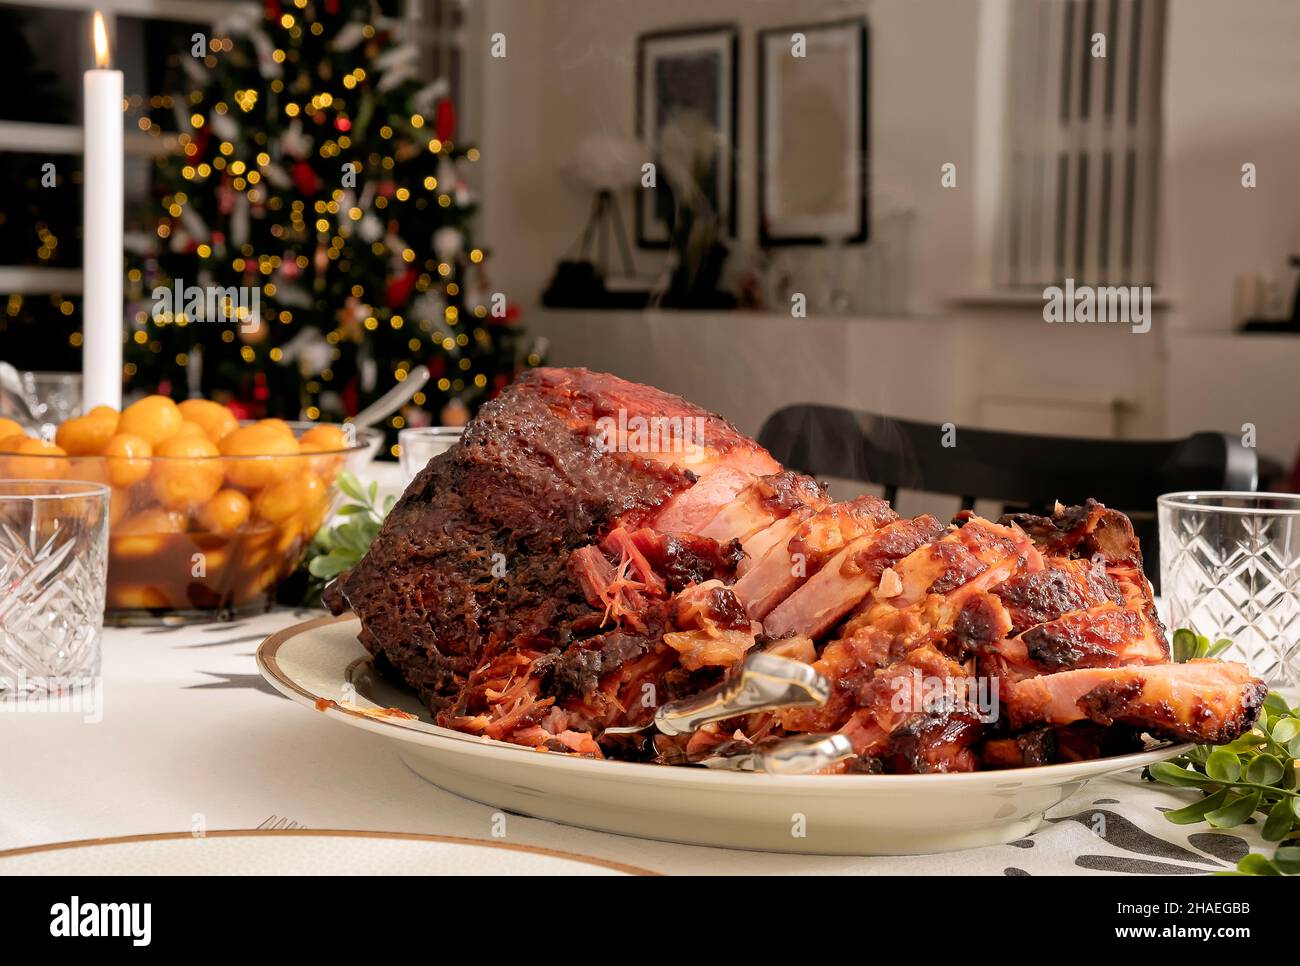 Ein traditionelles nordisches weihnachtsessen auf dem Tisch, mit braunen Kartoffeln und Fleisch in Scheiben, fertig zum Essen, heißem Dampf, der vom Steak aufsteigt Stockfoto